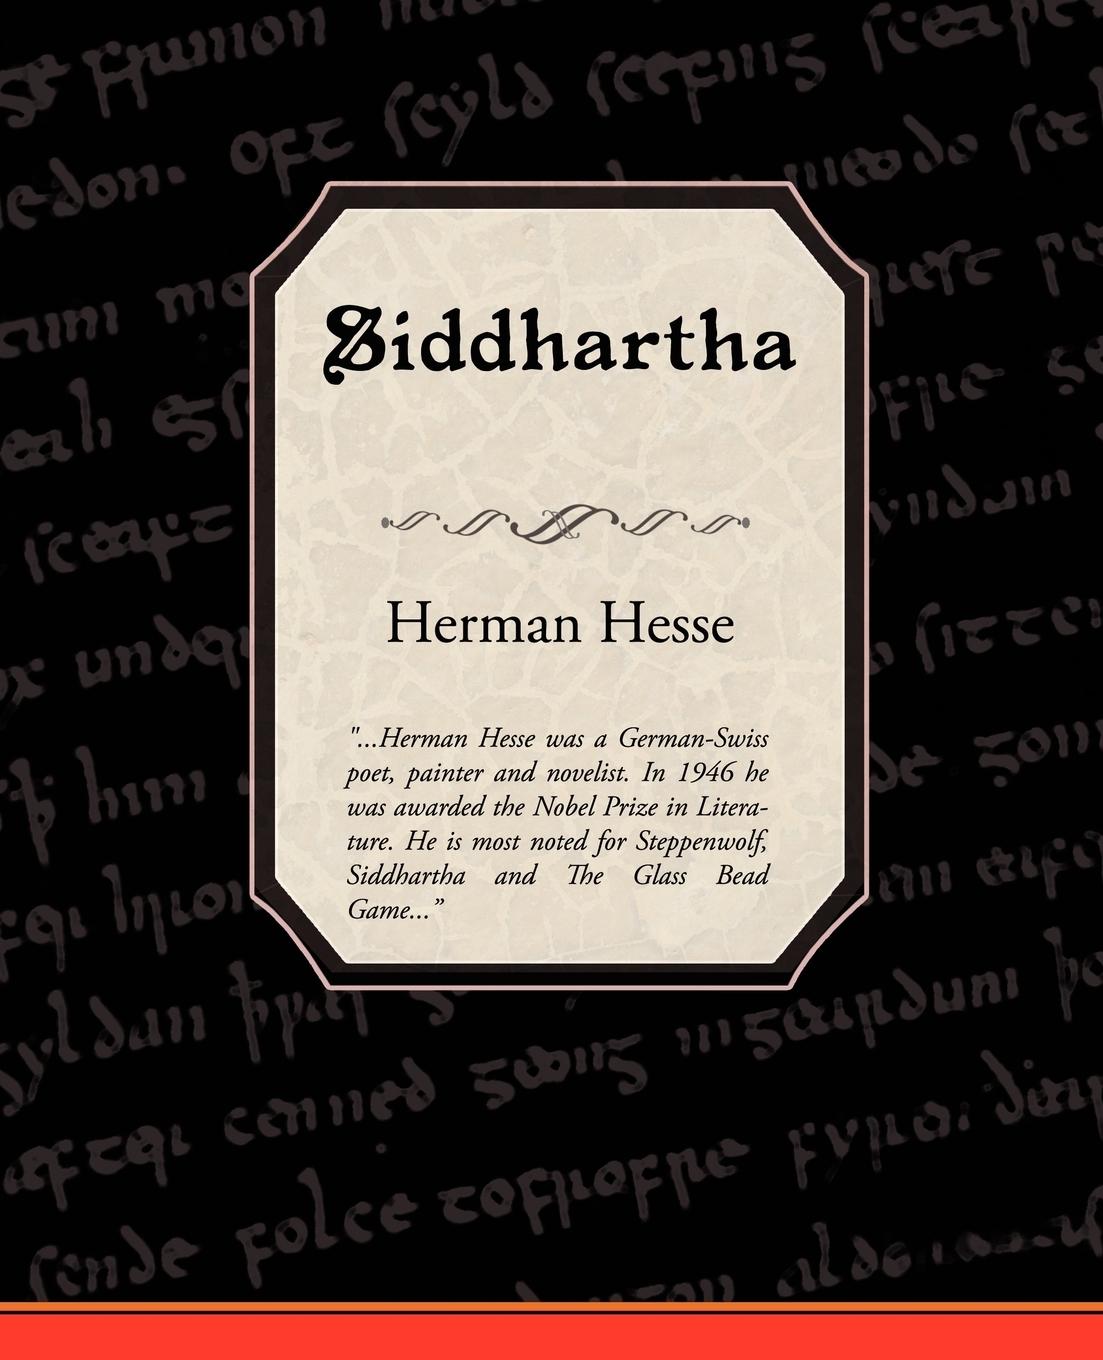 Siddhartha - Hesse, Herman